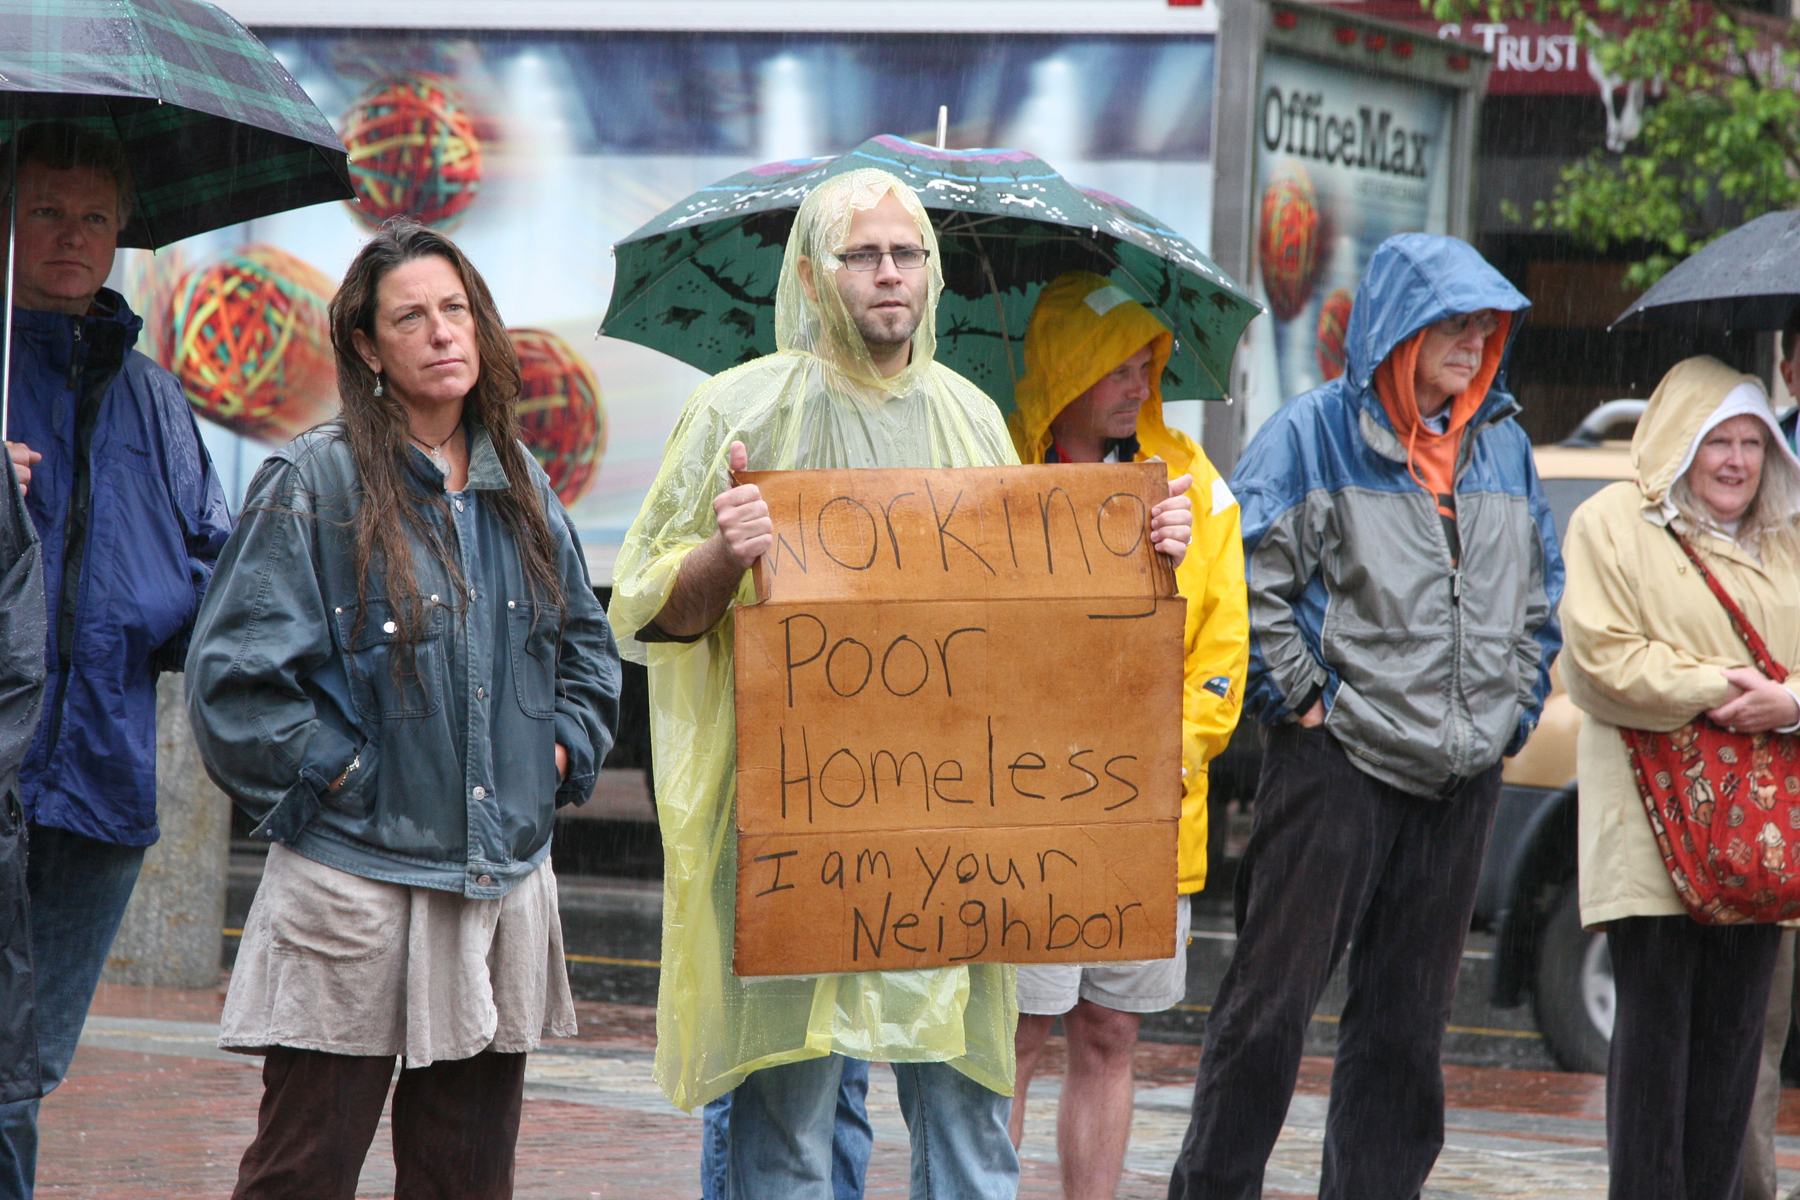 p-homeless1-062409.jpg